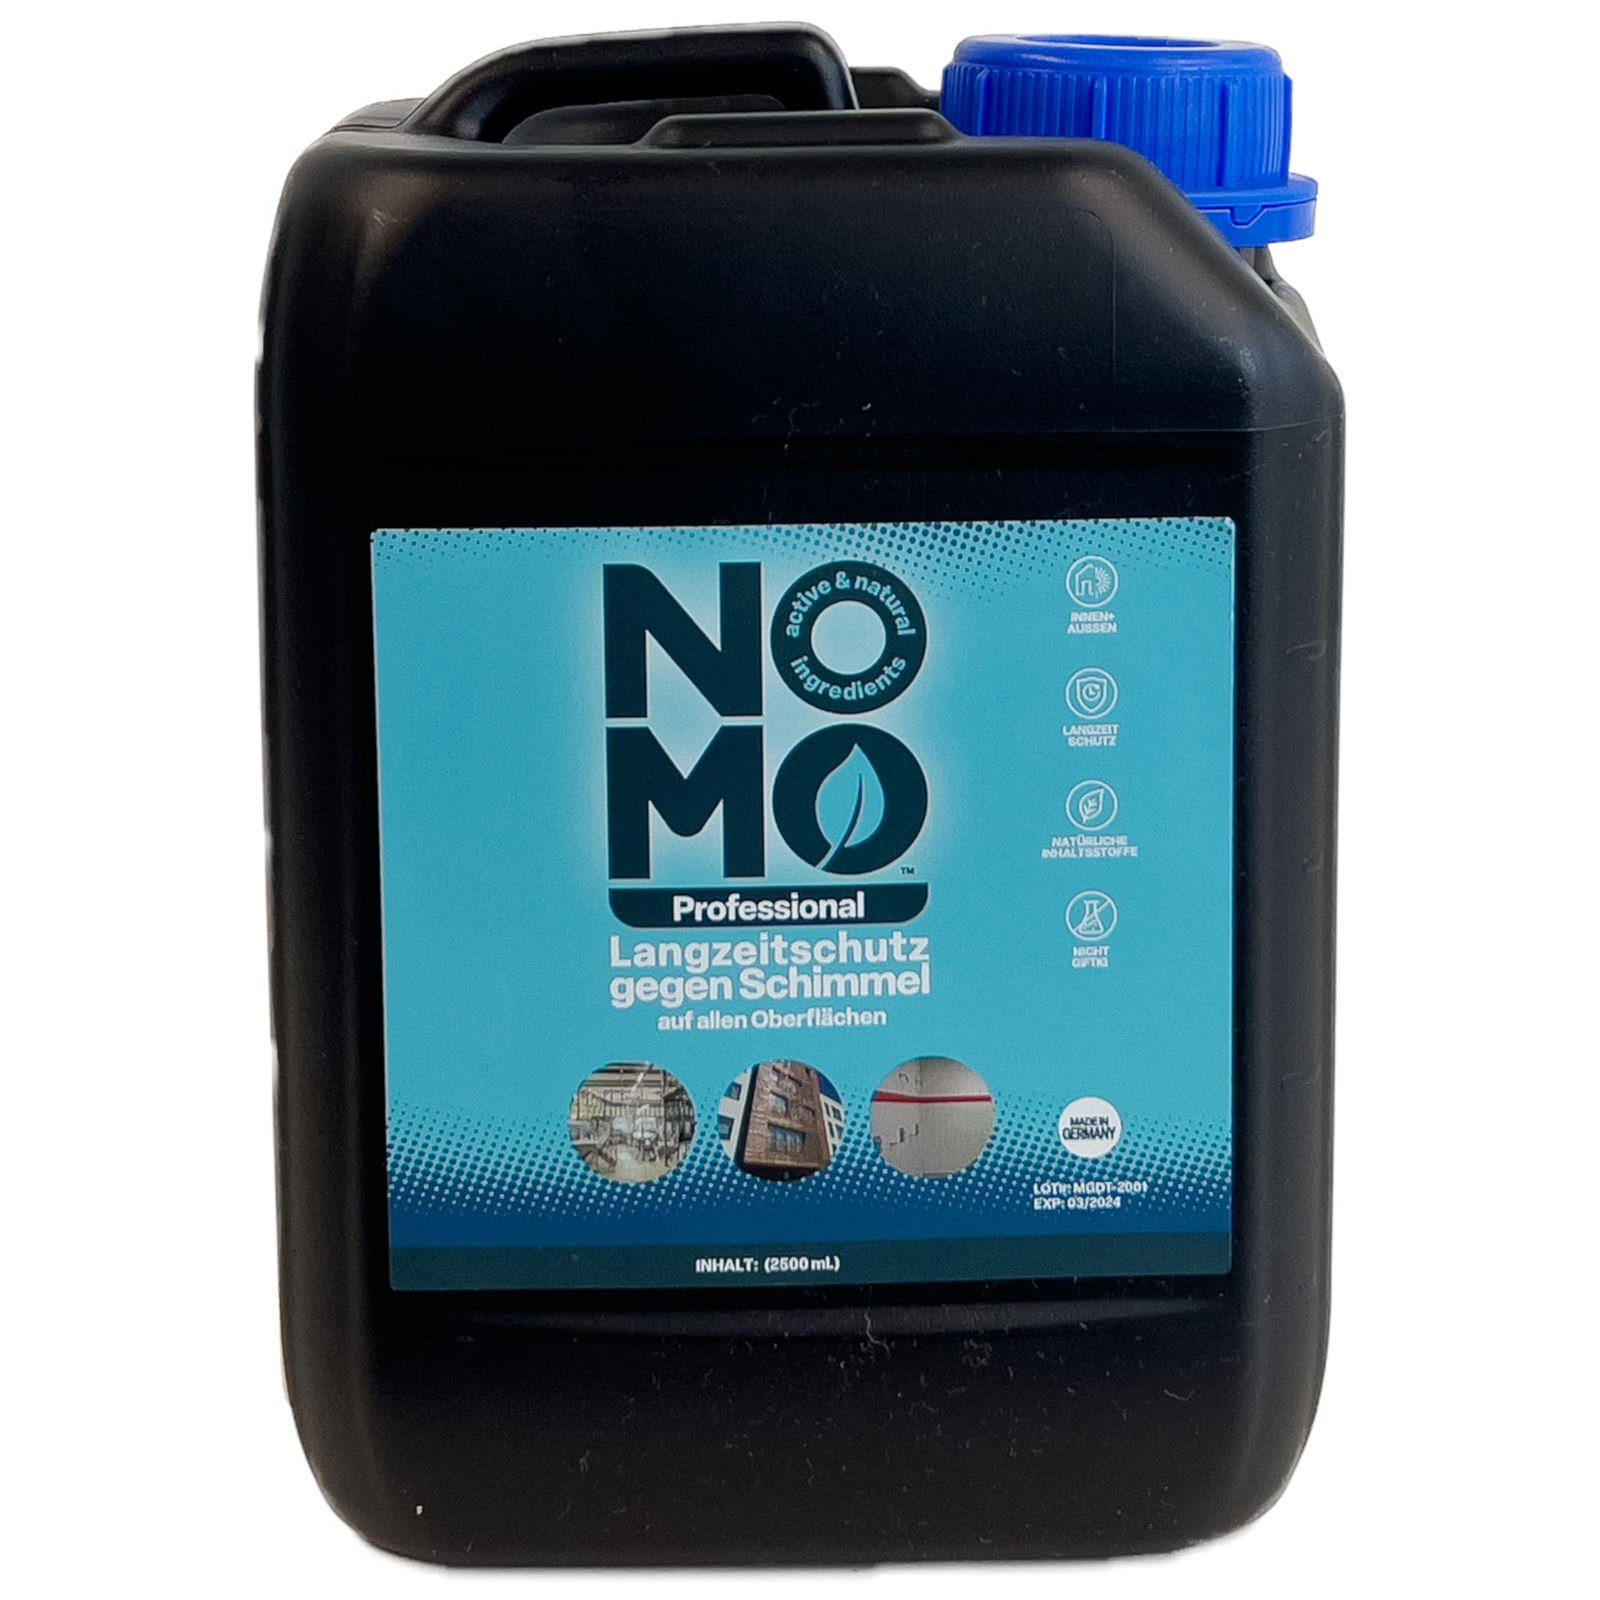 Schimmelentferner 2,5 Professional Langzeitschutz gegen - NOMO Liter Schimmel